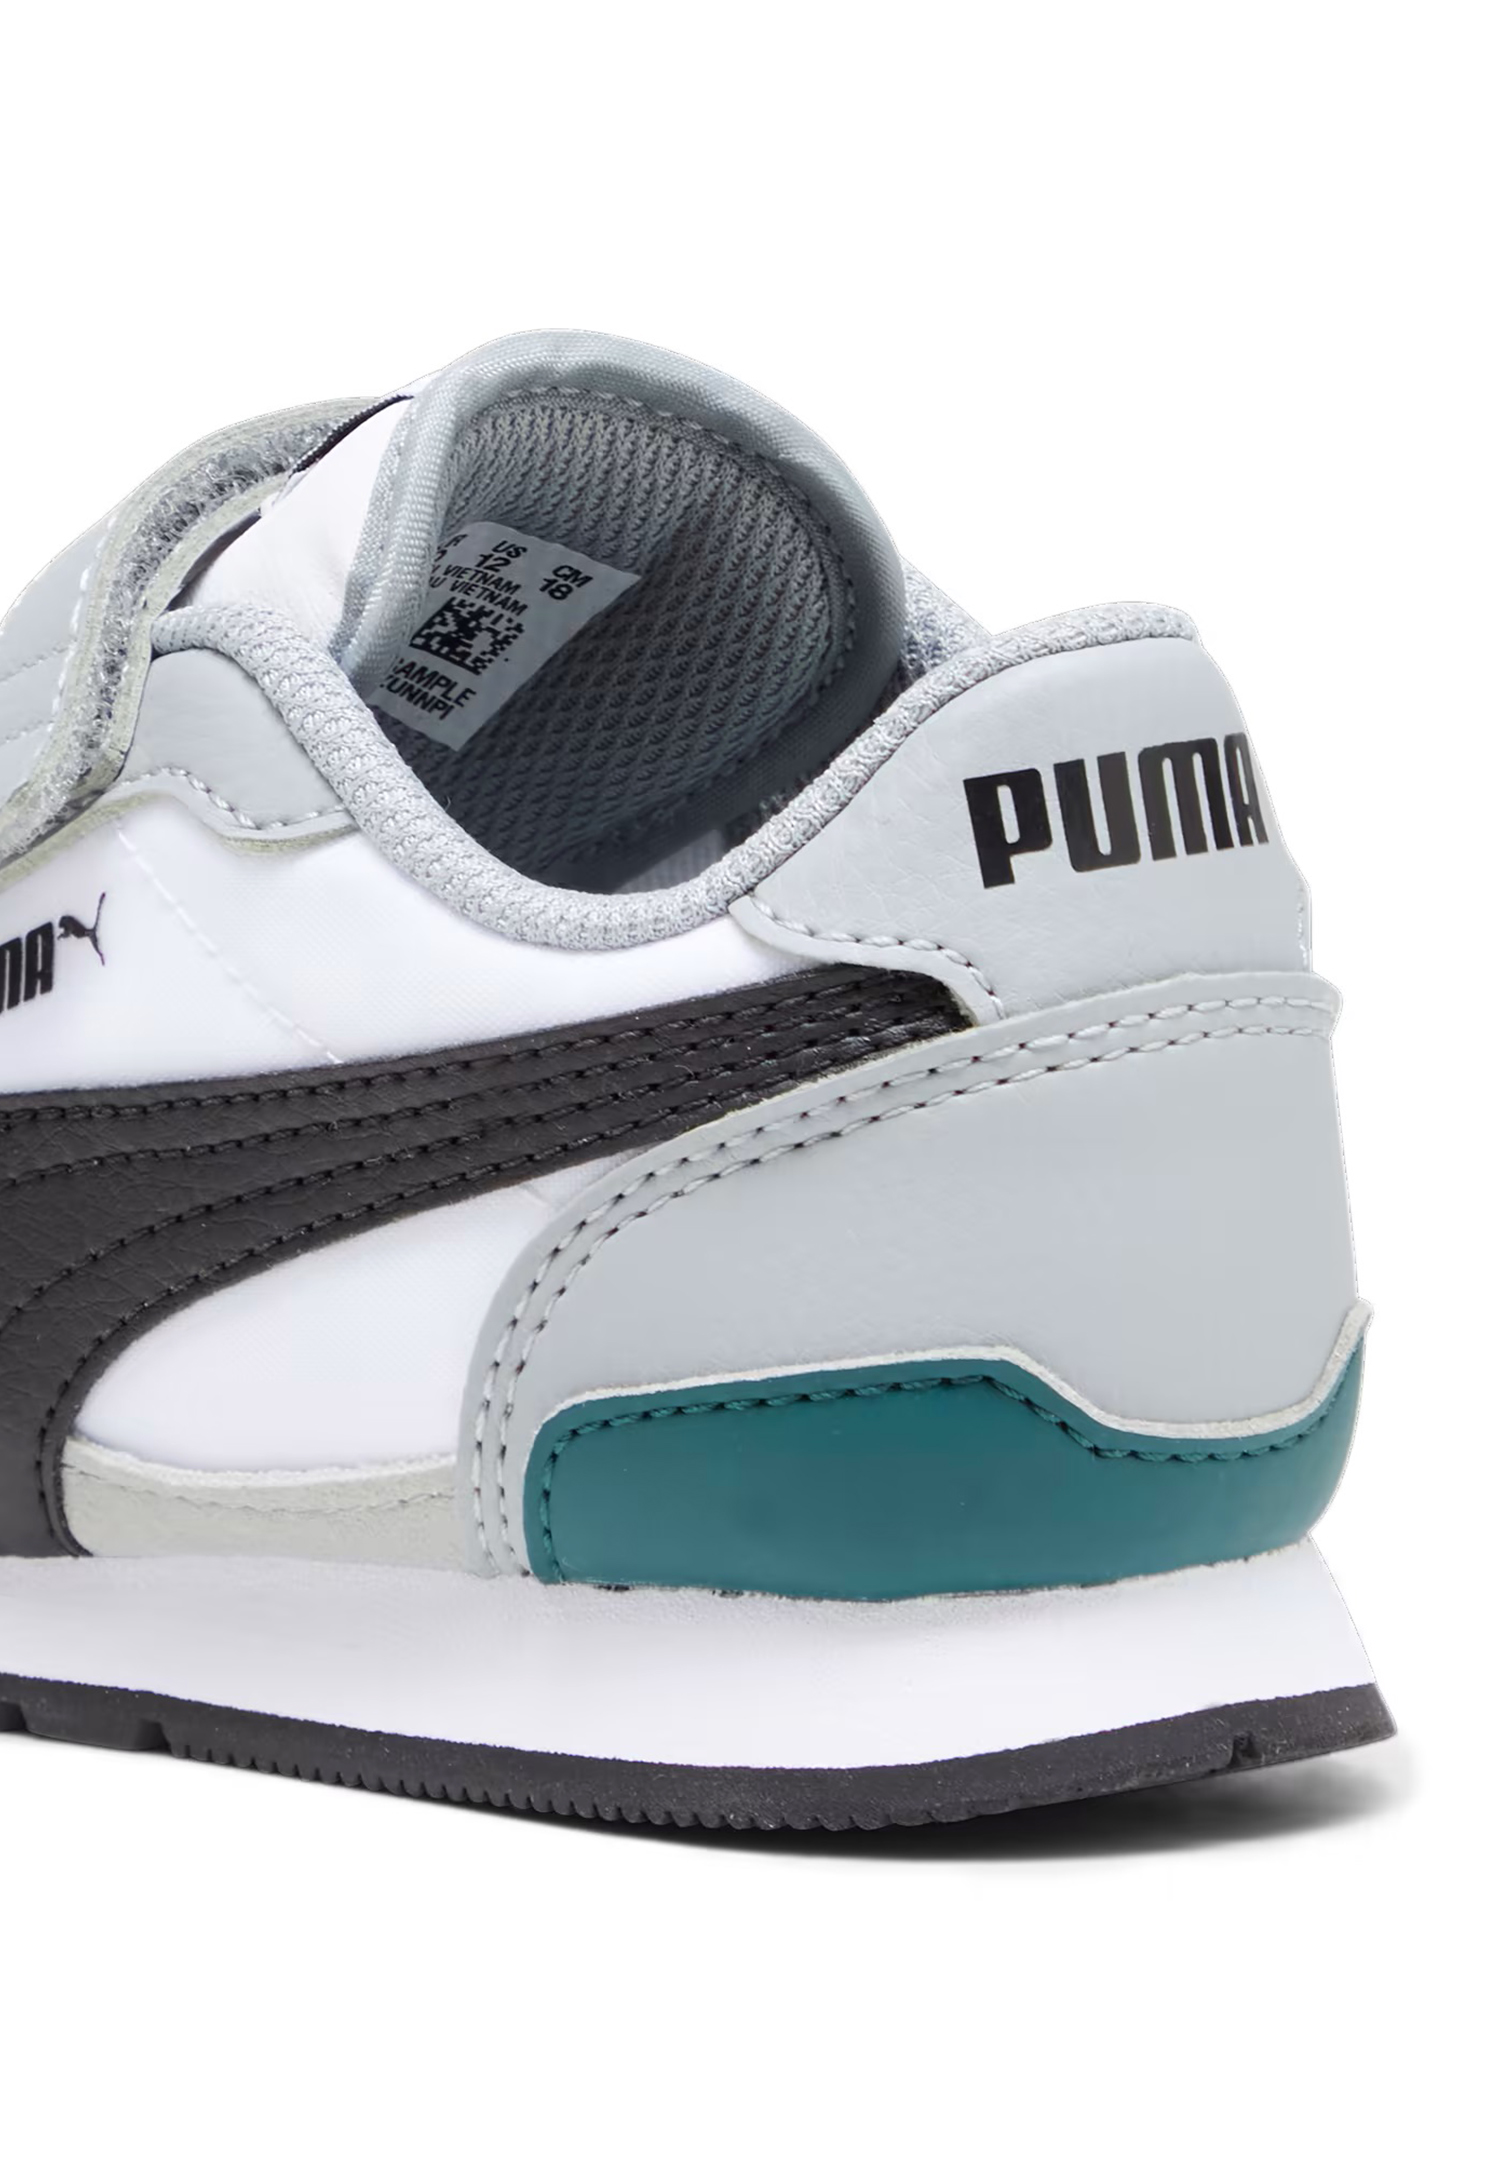 Puma Kinder ST Runner V3 NL V PS Unisex Kinder Sneaker Sportschuh 384902 09 weiss grau